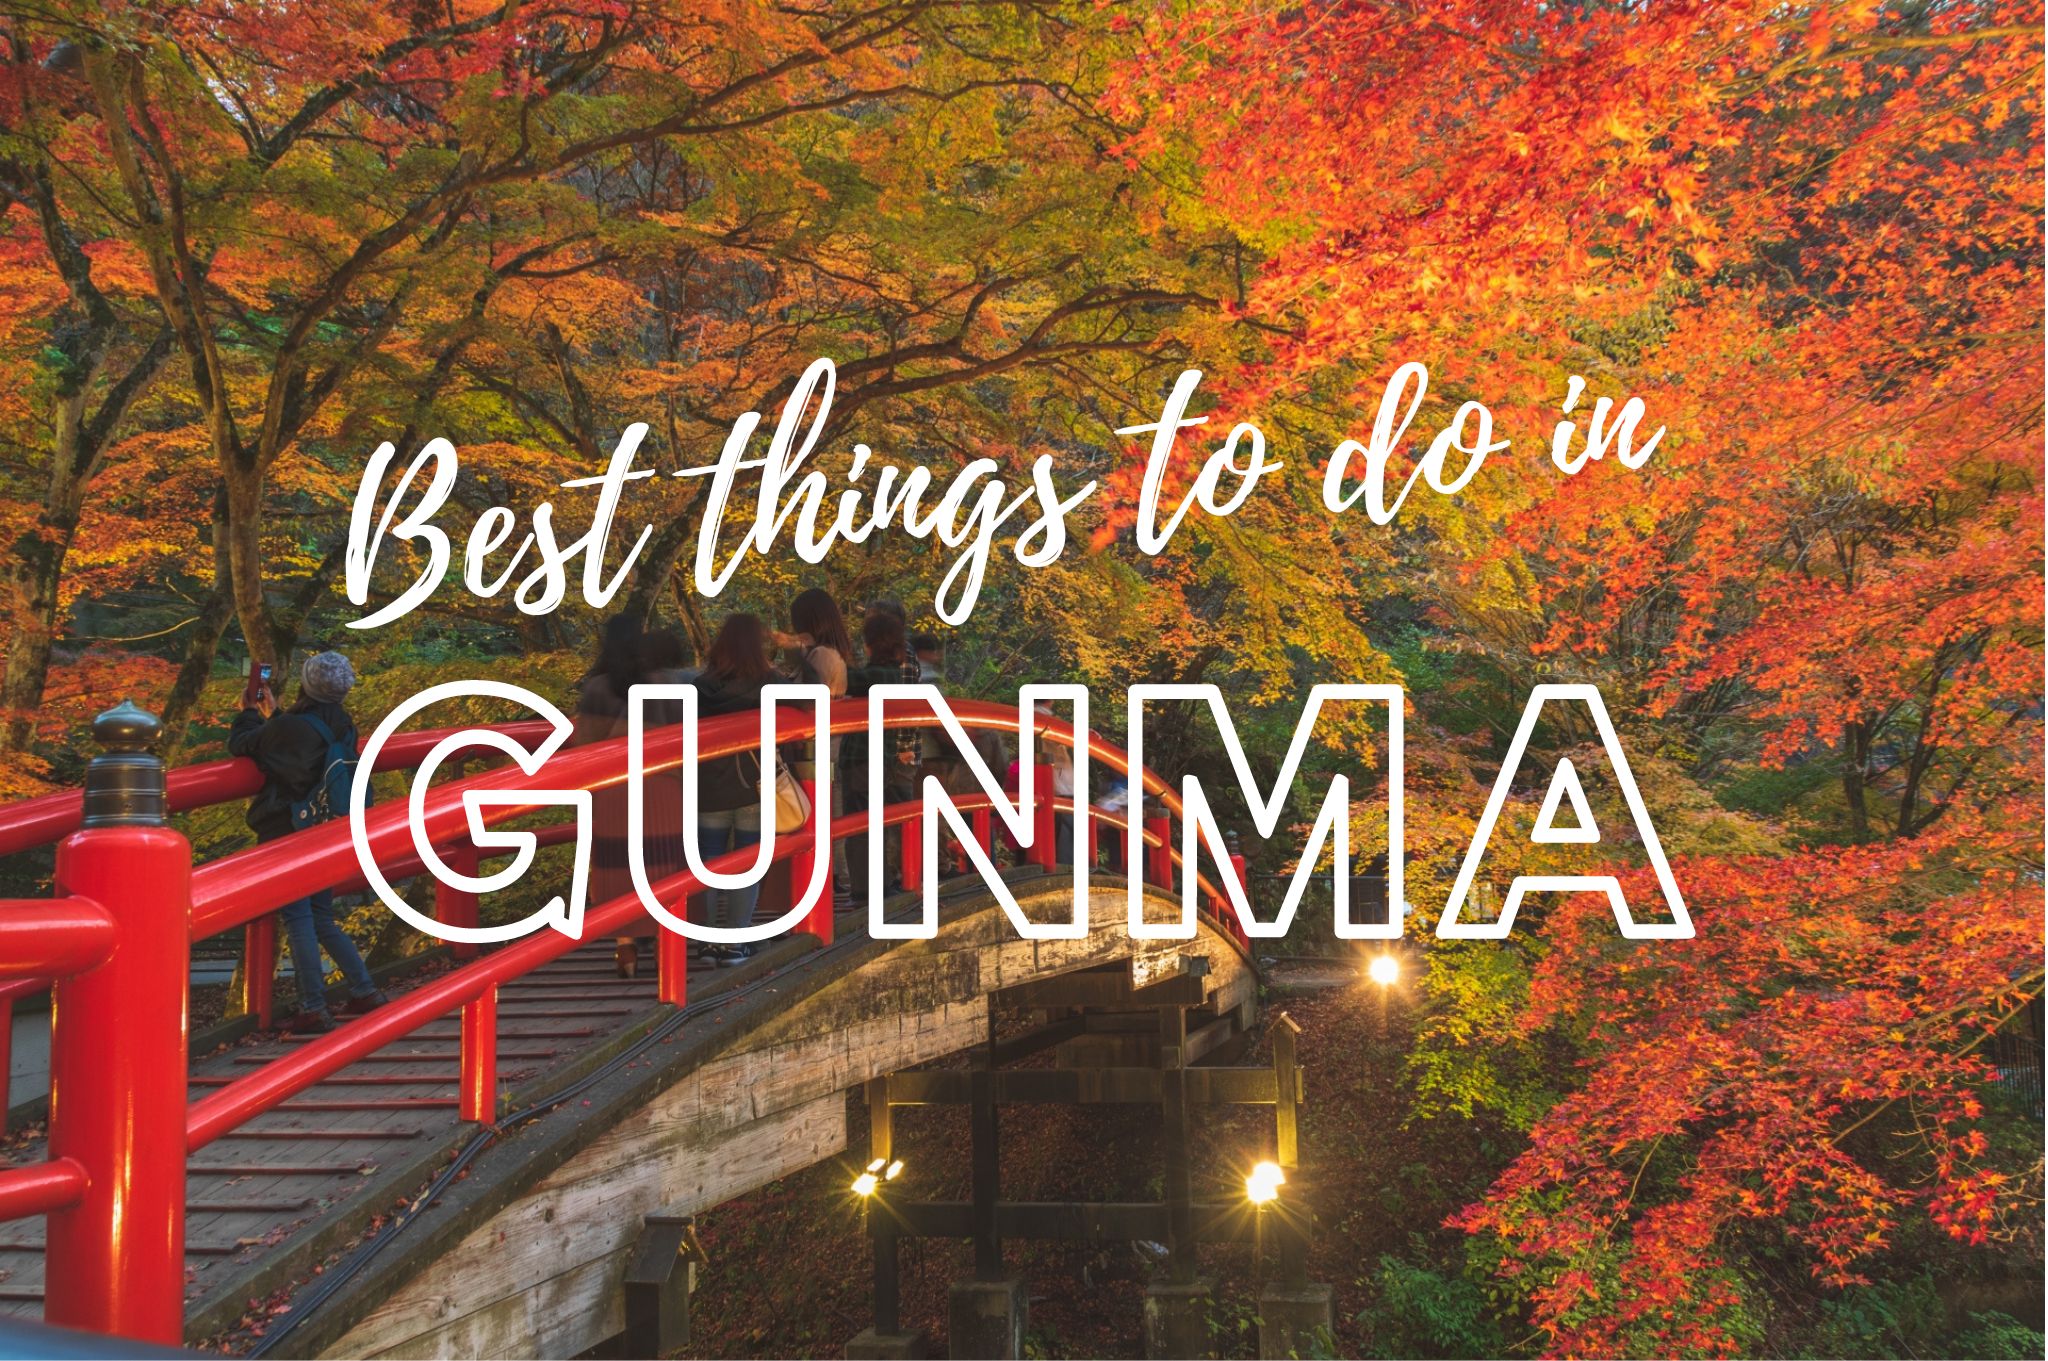 gunma japan travel guide